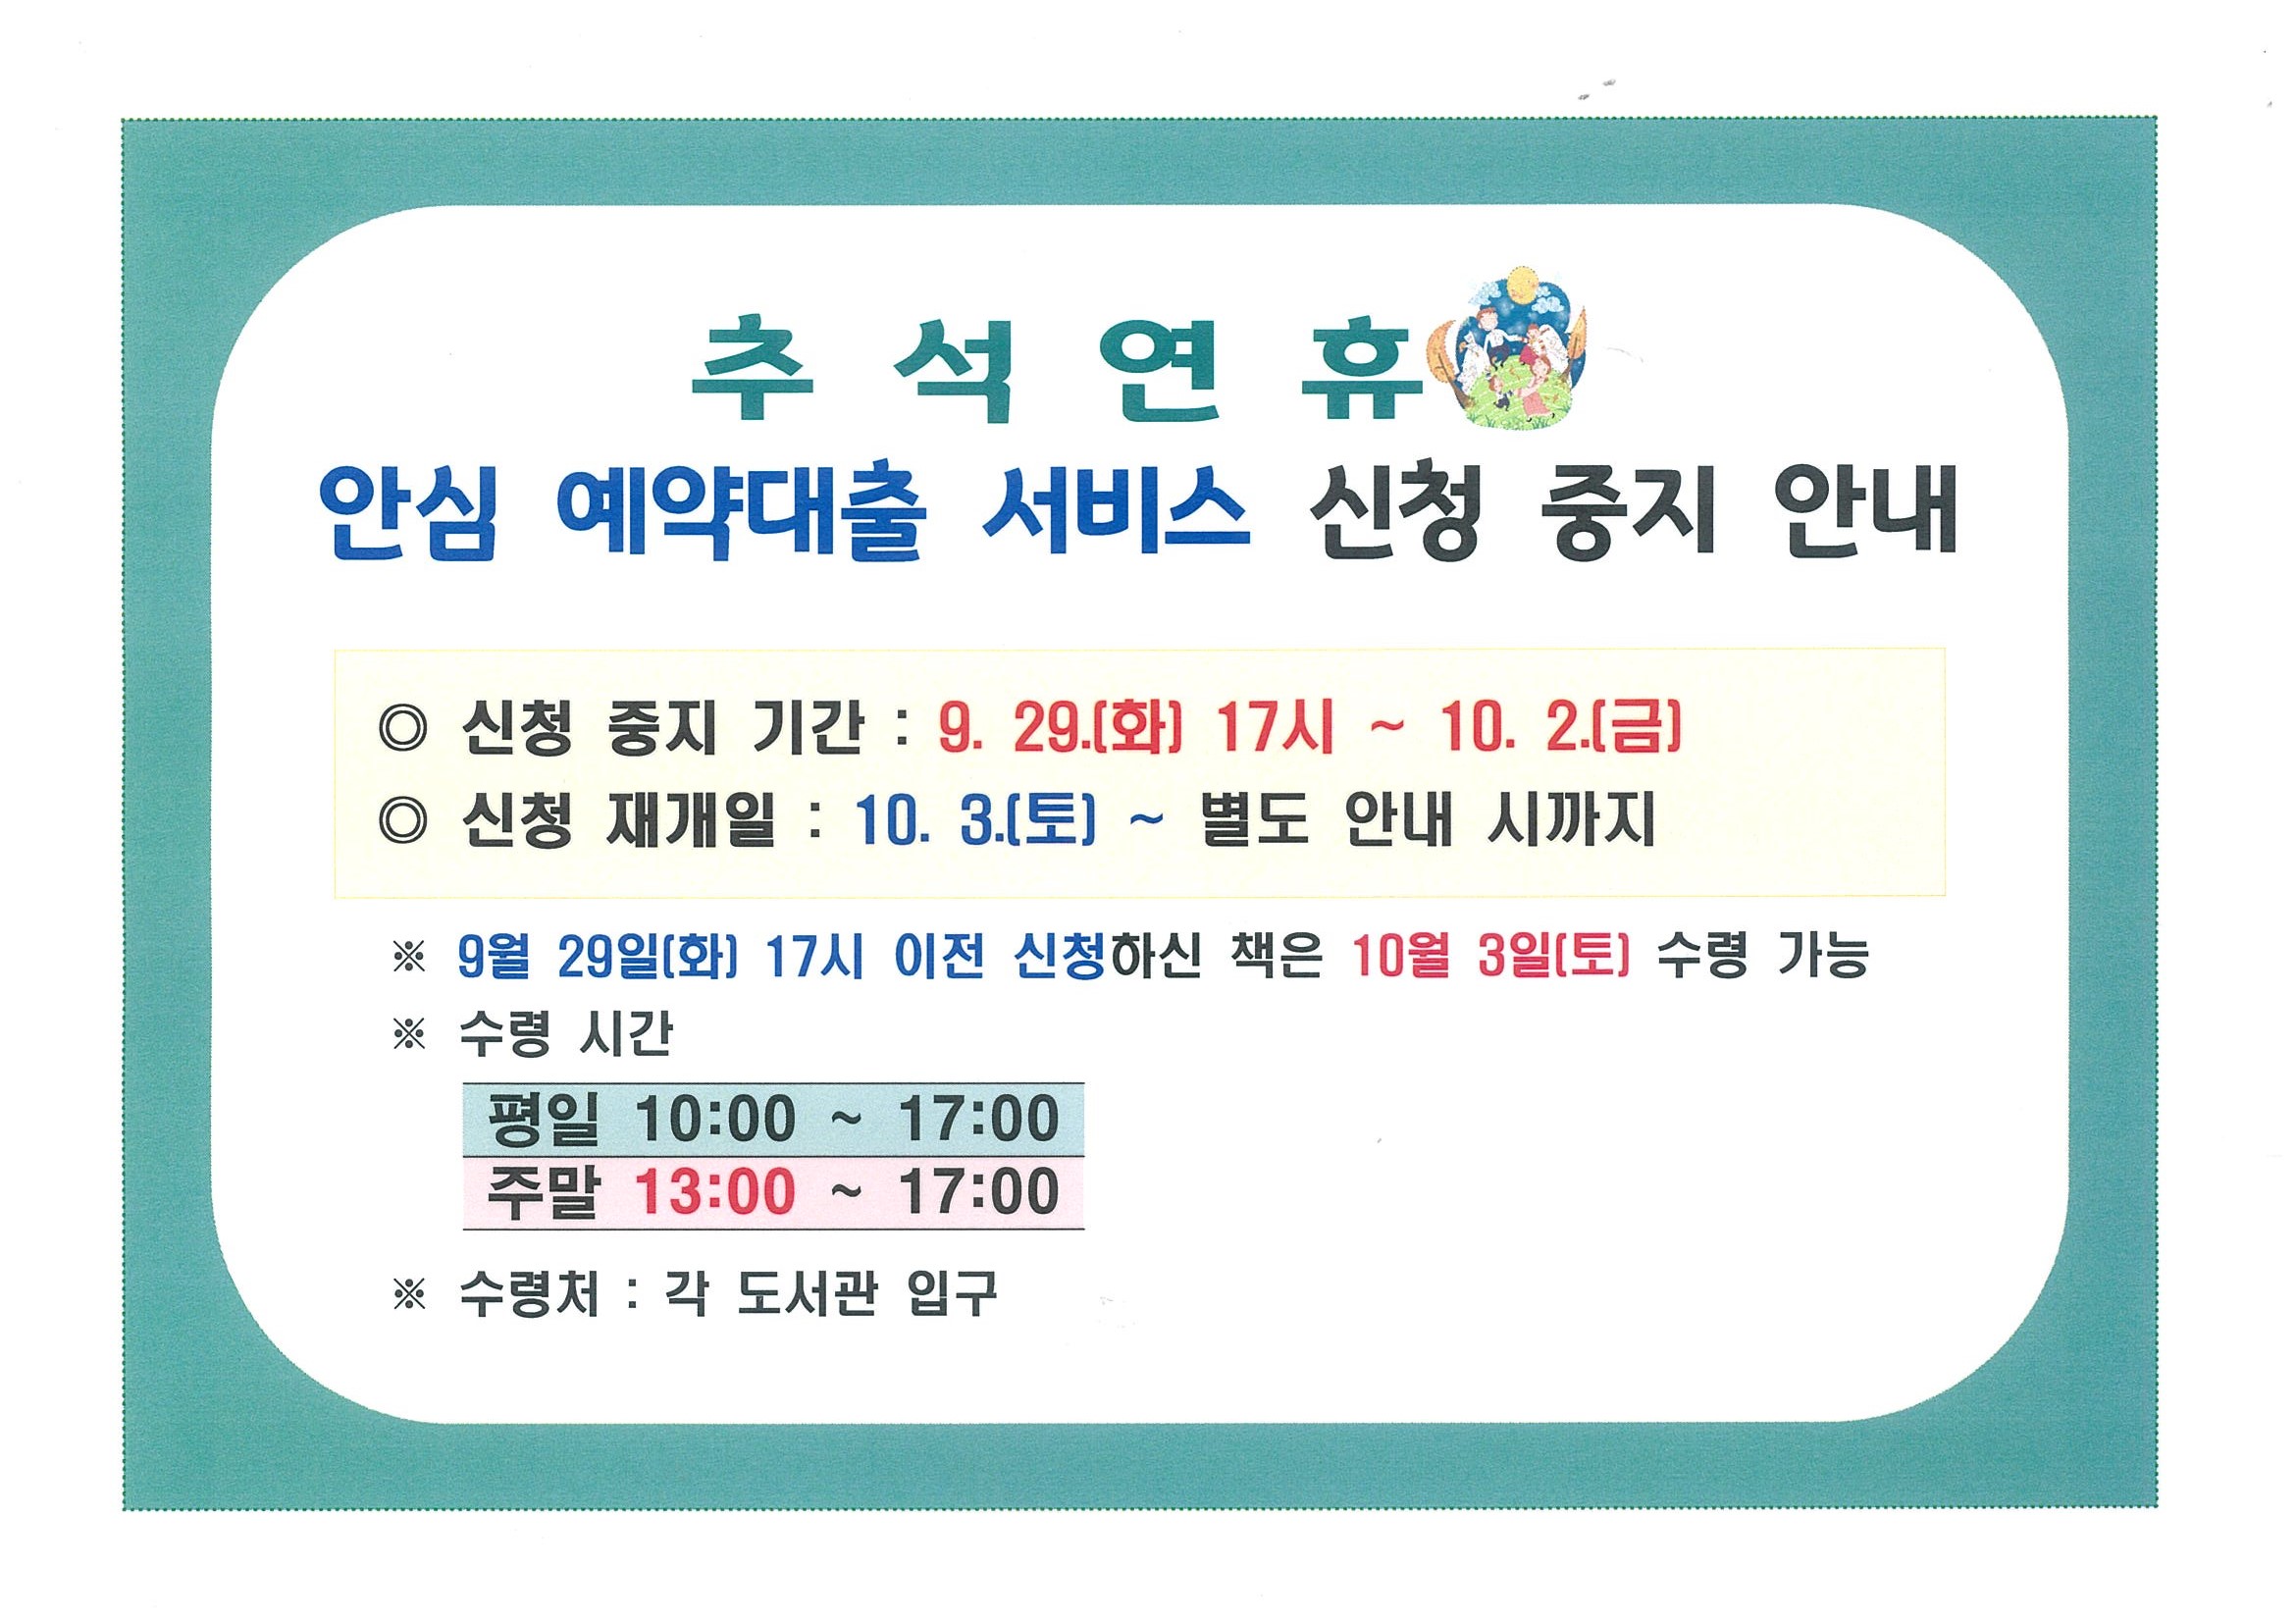 추석연휴(9. 29. 17시 ~ 10. 2.) 안심 예약대출 서비스 신청 중지 안내